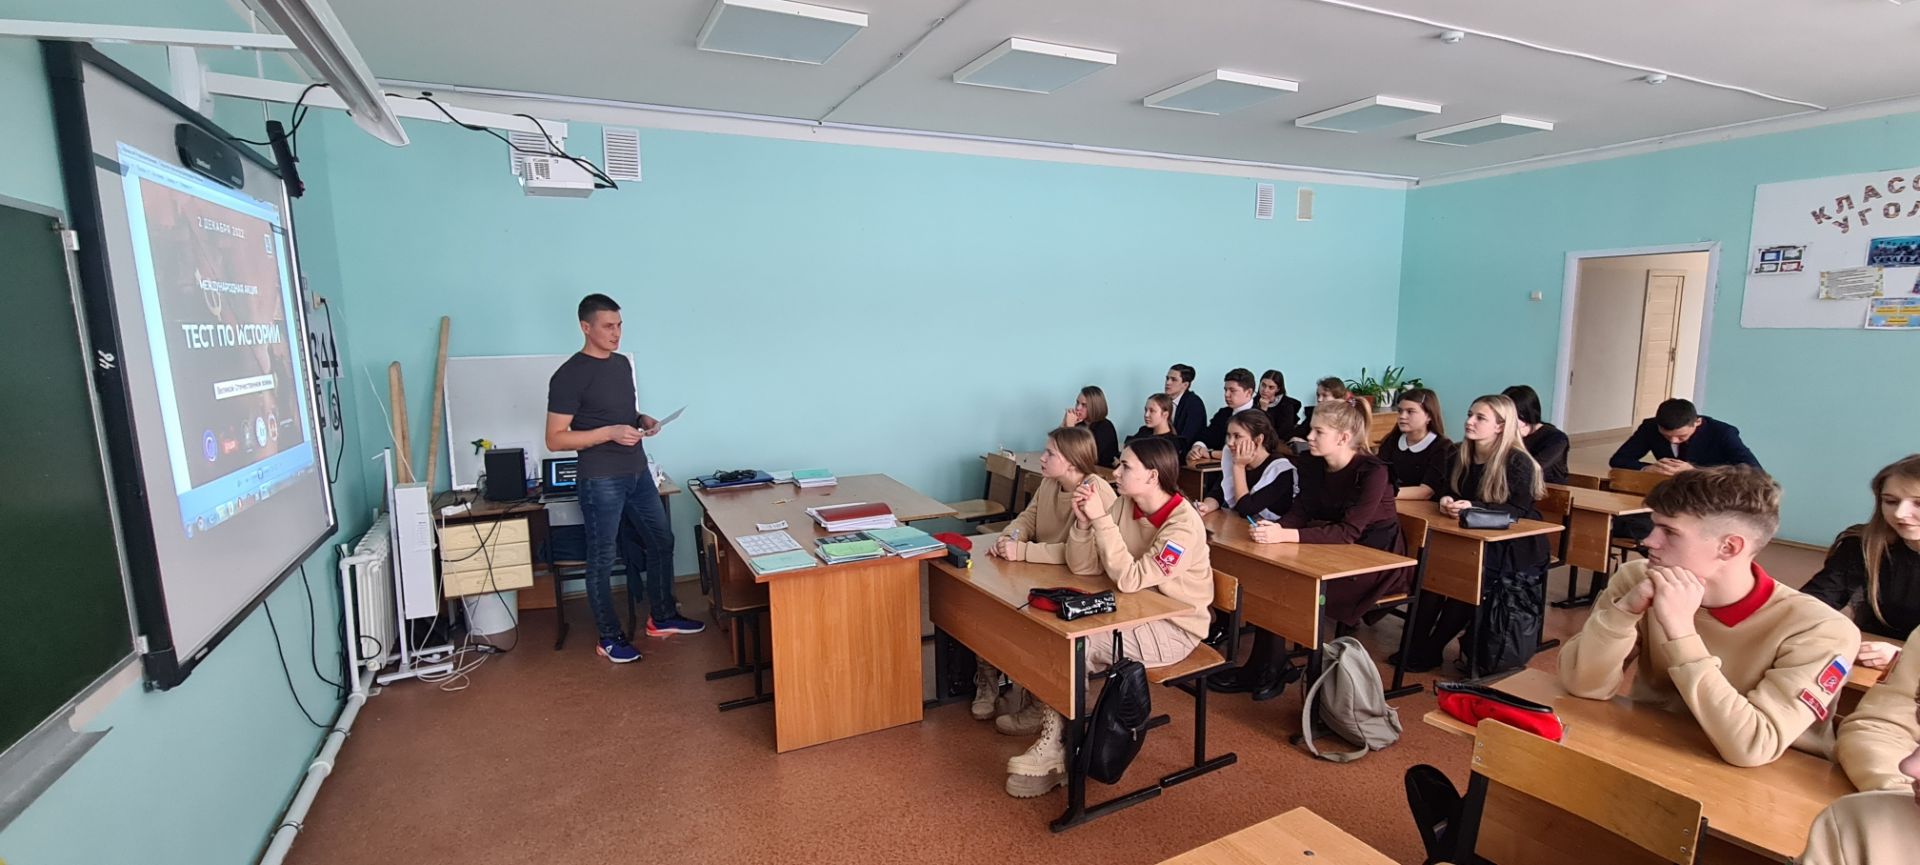 Лаишевские школьники написали диктант по истории Великой Отечественной войны